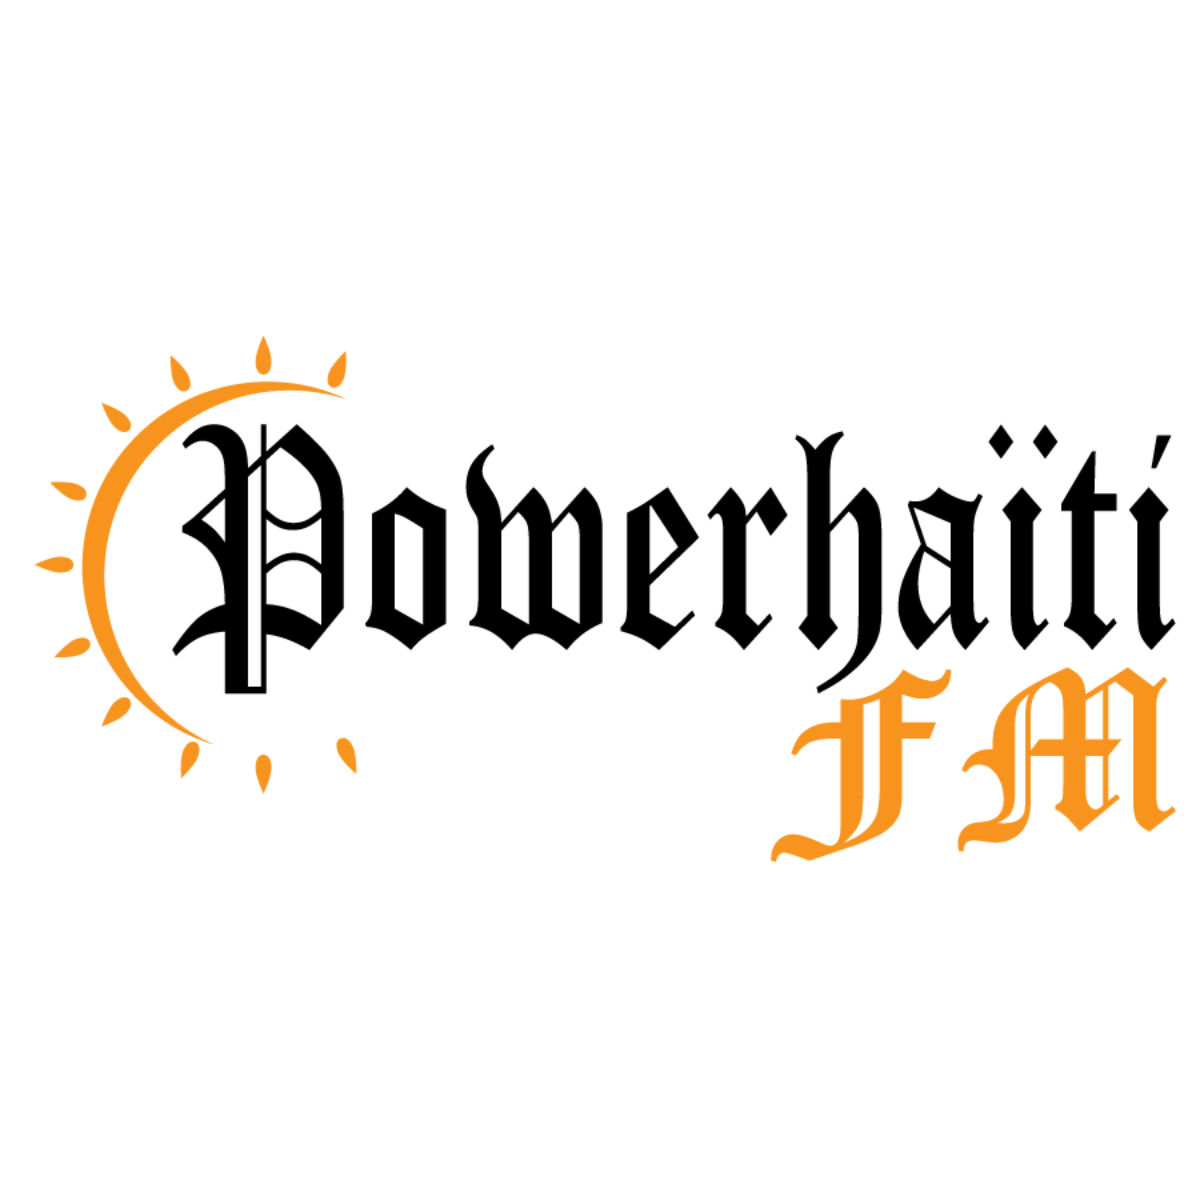 Power Haiti FM